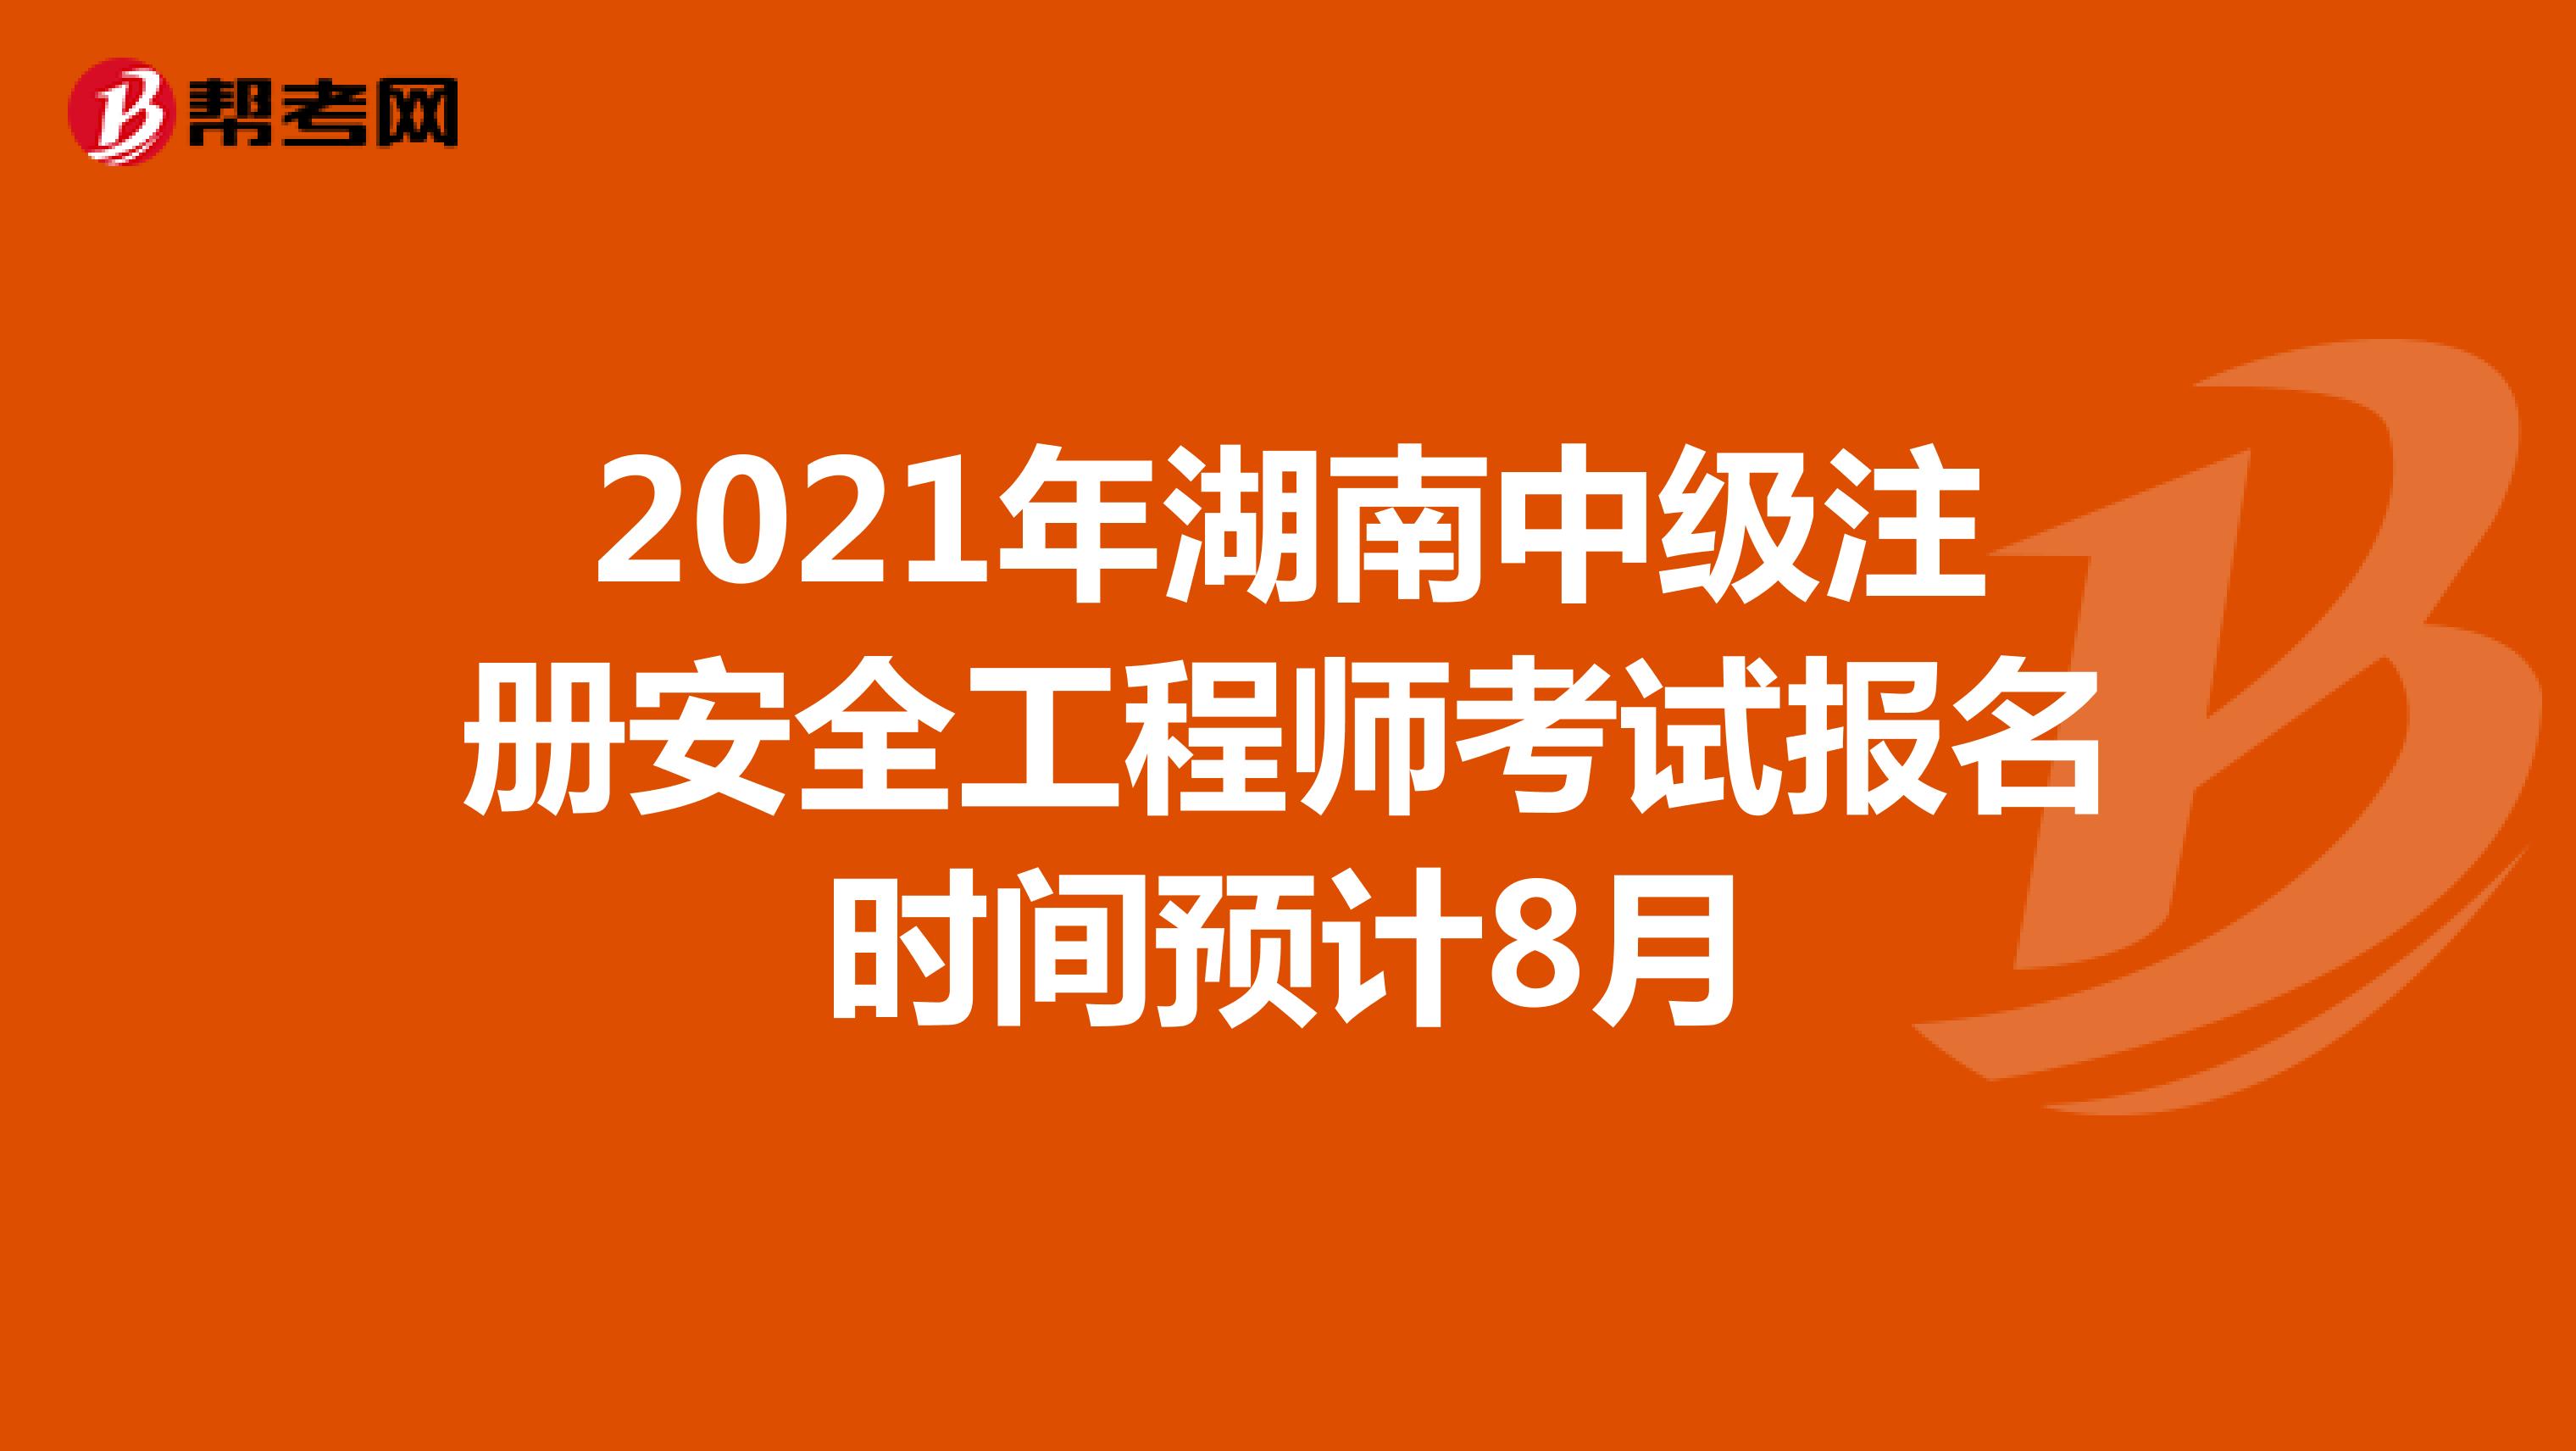 2021年湖南中级注册安全工程师考试报名时间预计8月